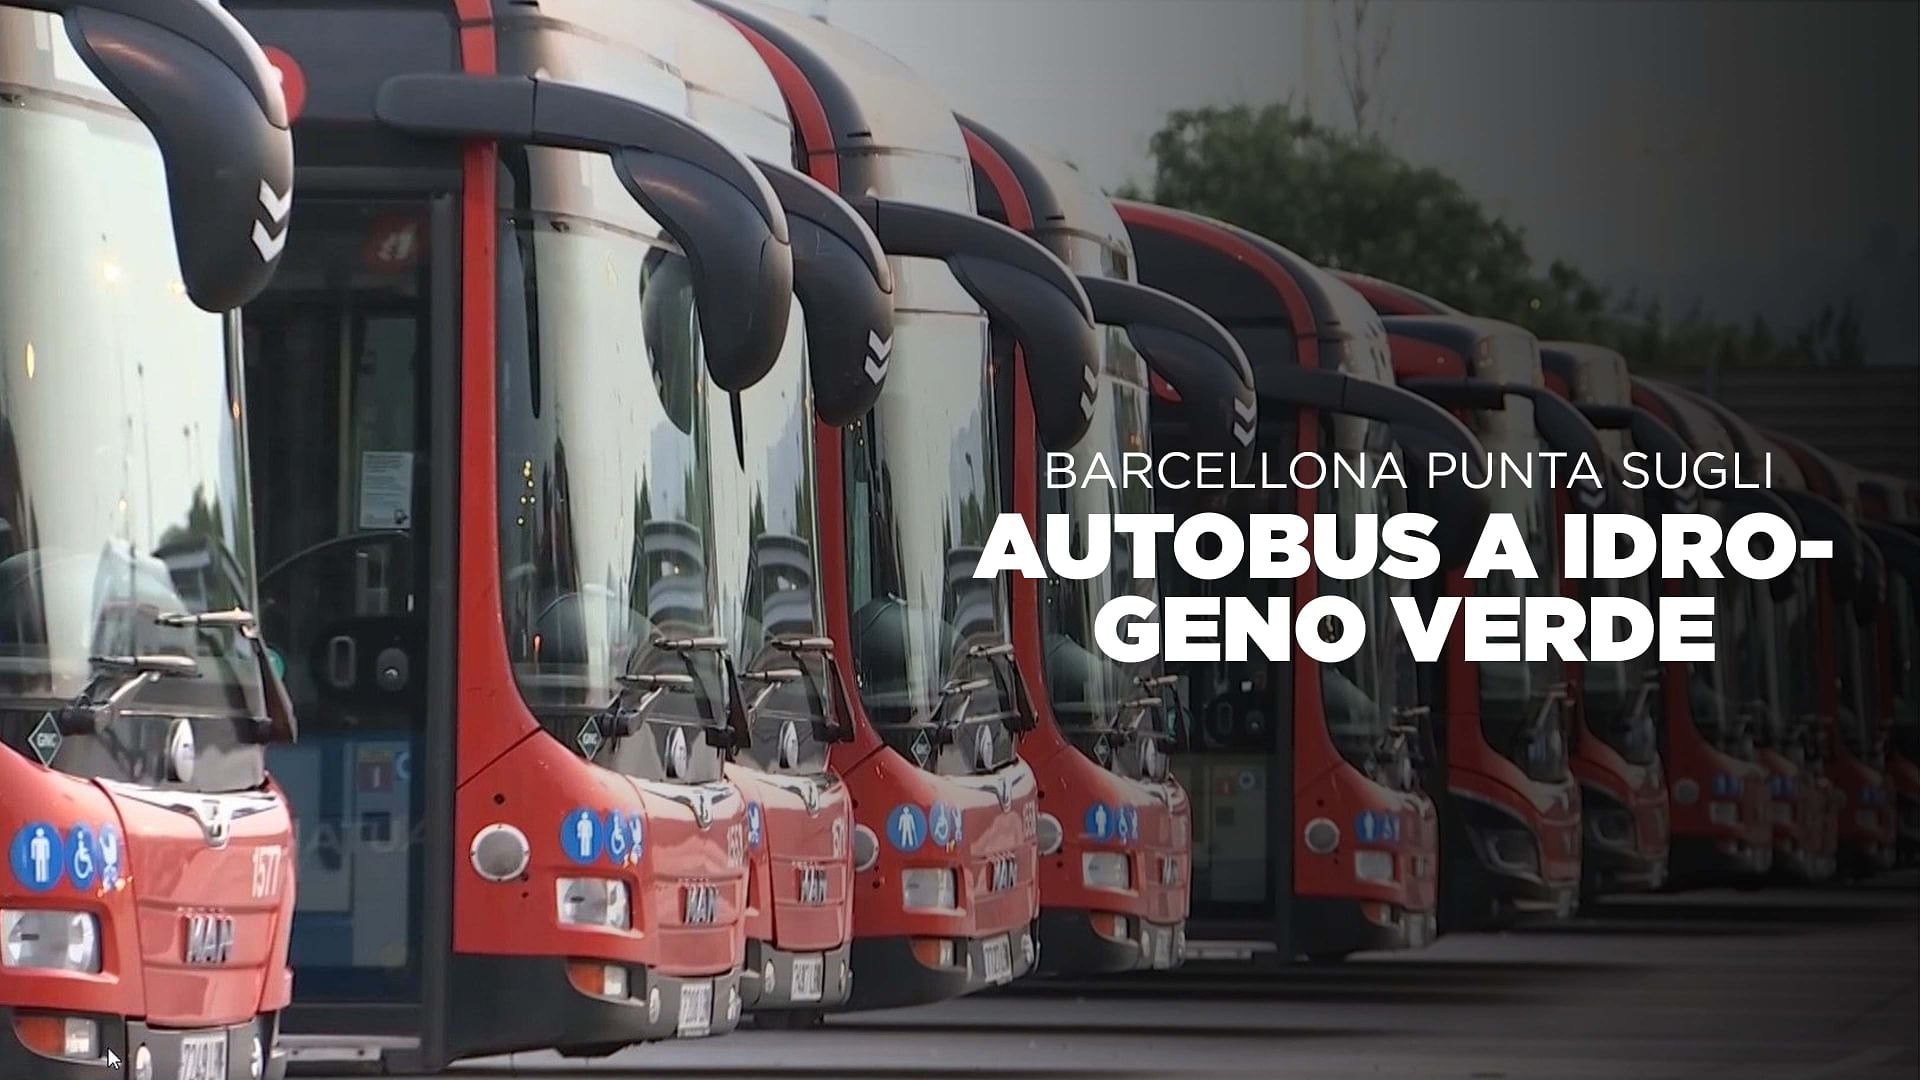 Barcellona punta sugli autobus a idrogeno verde